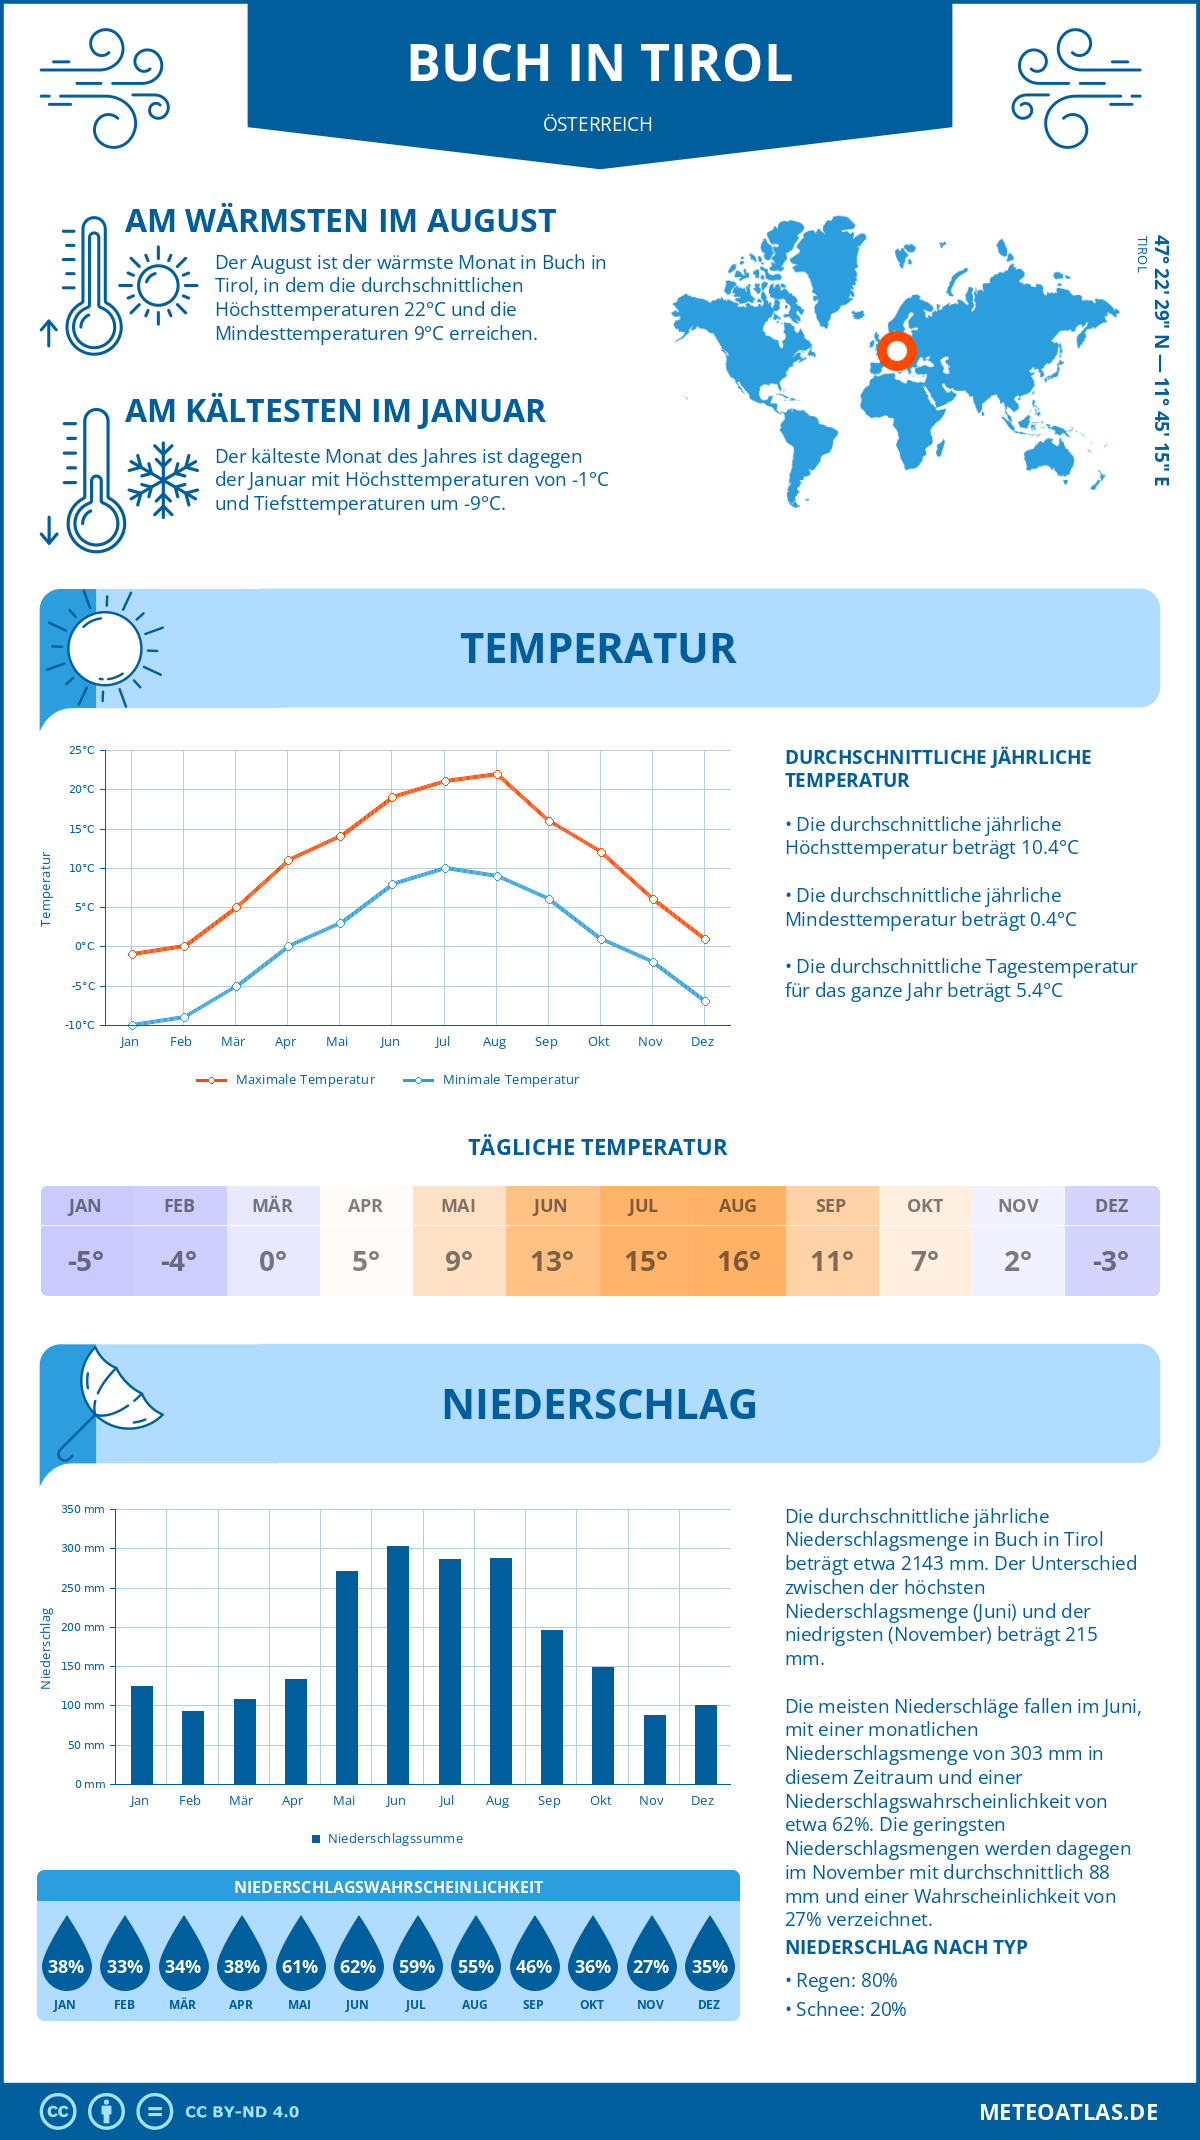 Wetter Buch in Tirol (Österreich) - Temperatur und Niederschlag